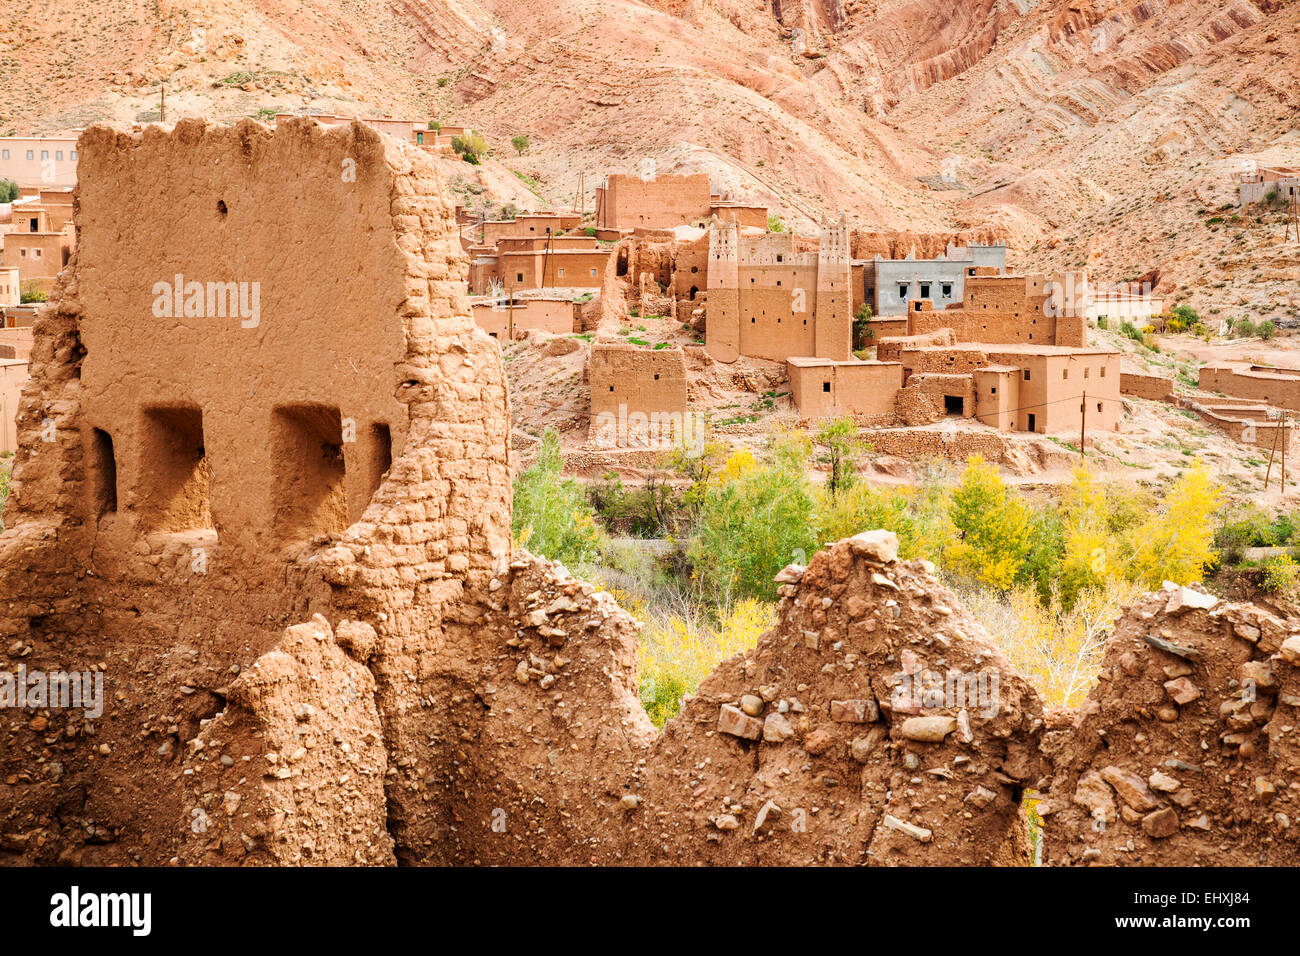 Ville berbère traditionnel sur la route des kasbahs, Province de Ouarzazate, Maroc Banque D'Images